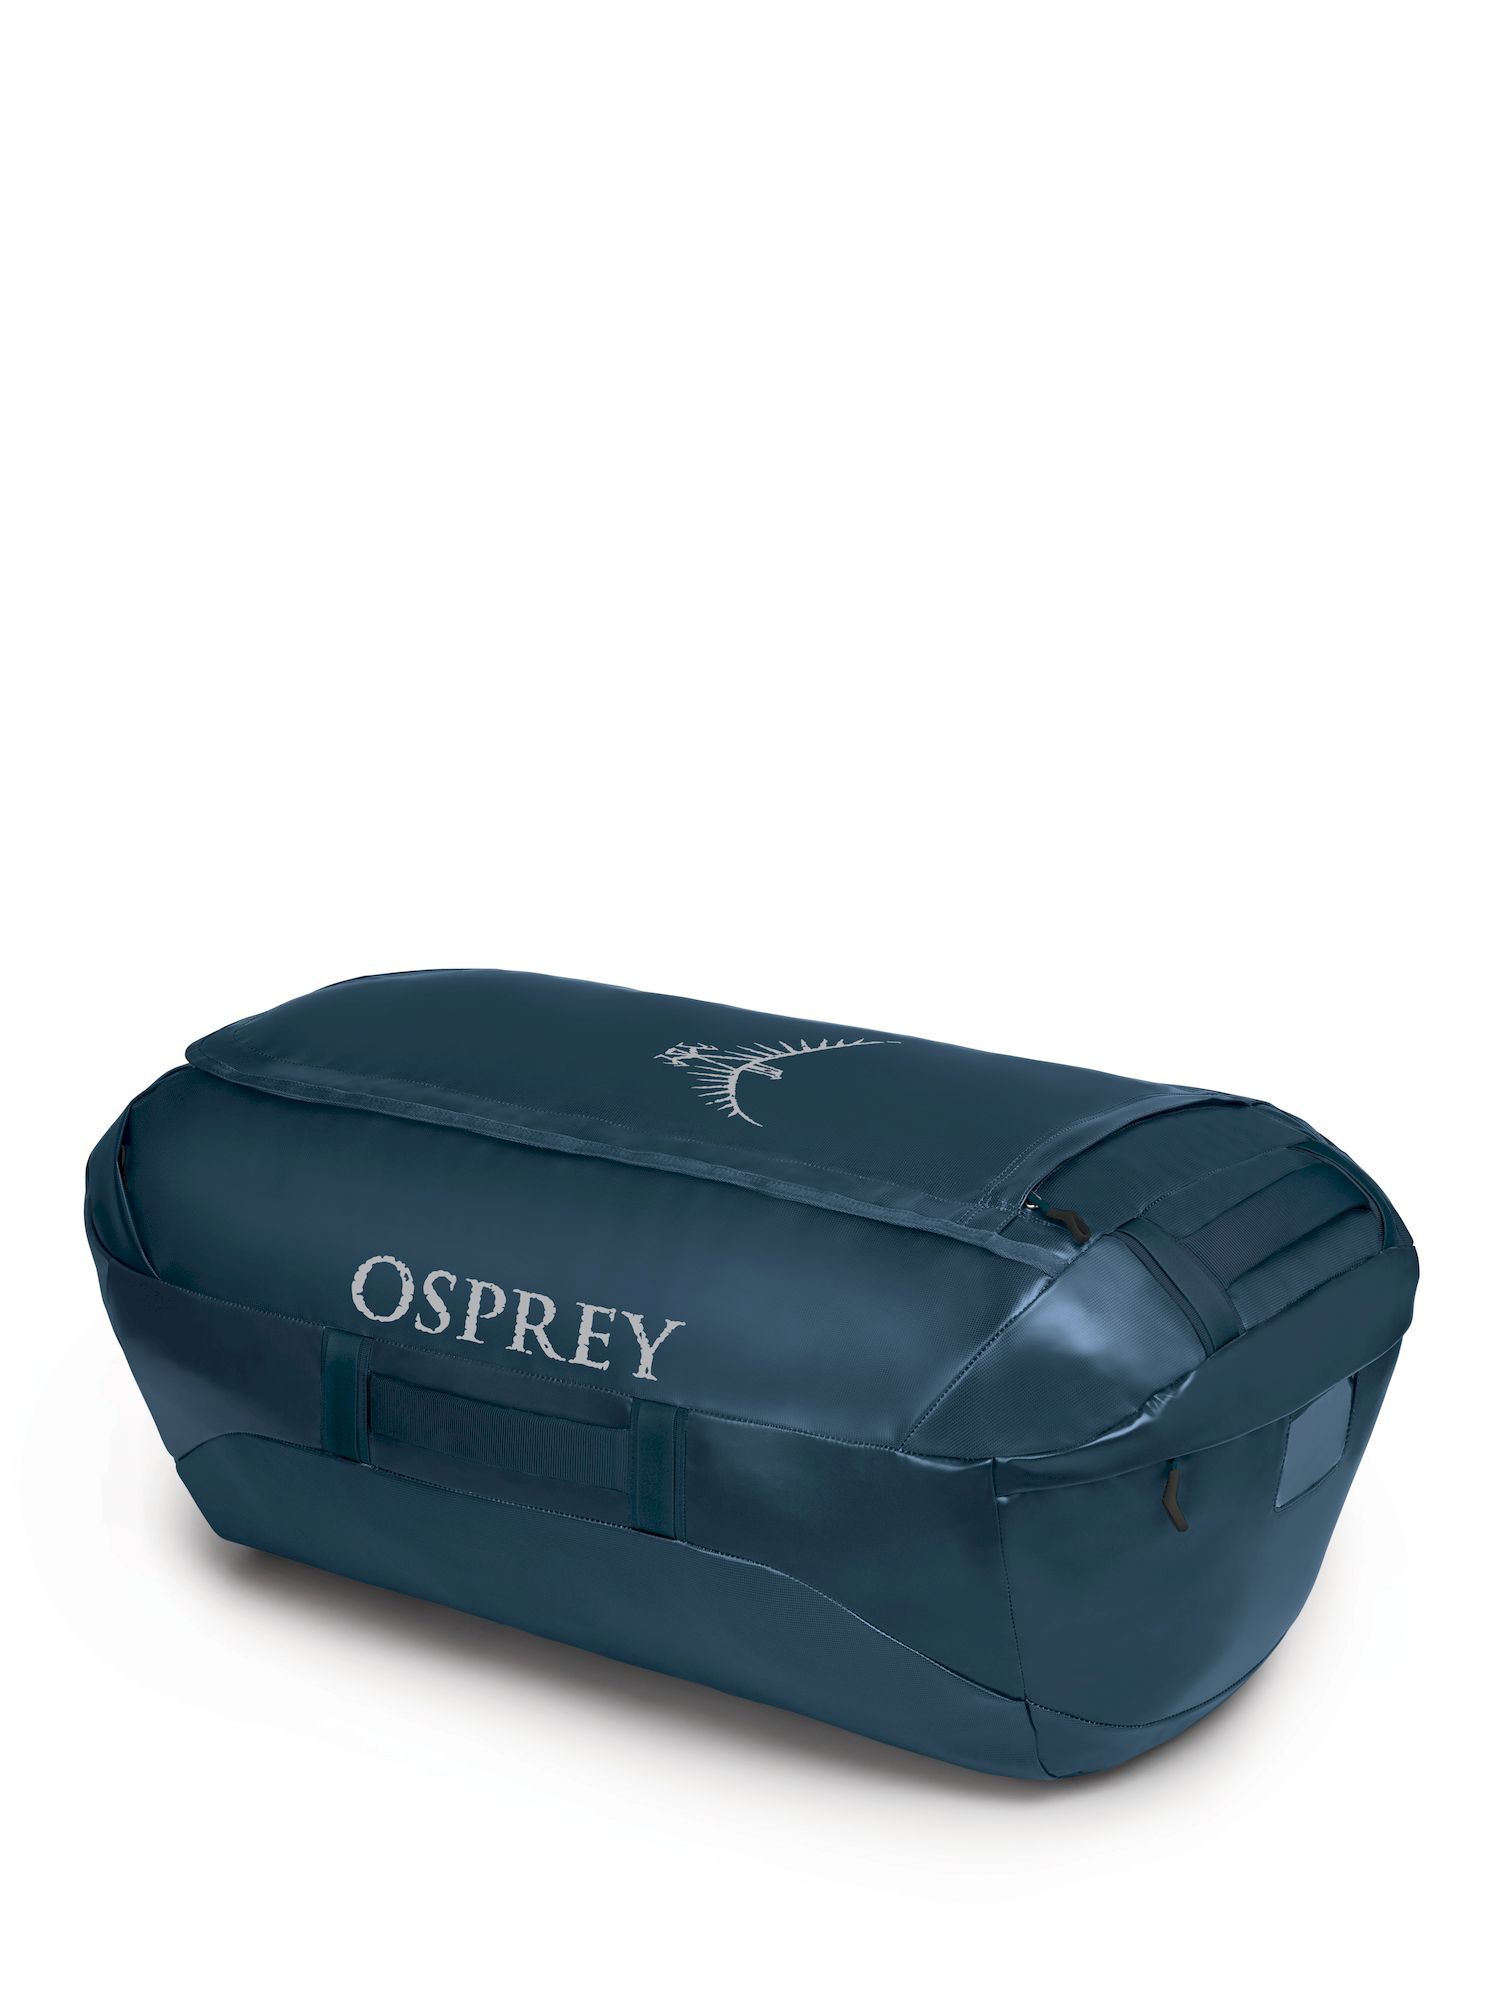 Osprey Transporter 120 - Travel bag | Hardloop